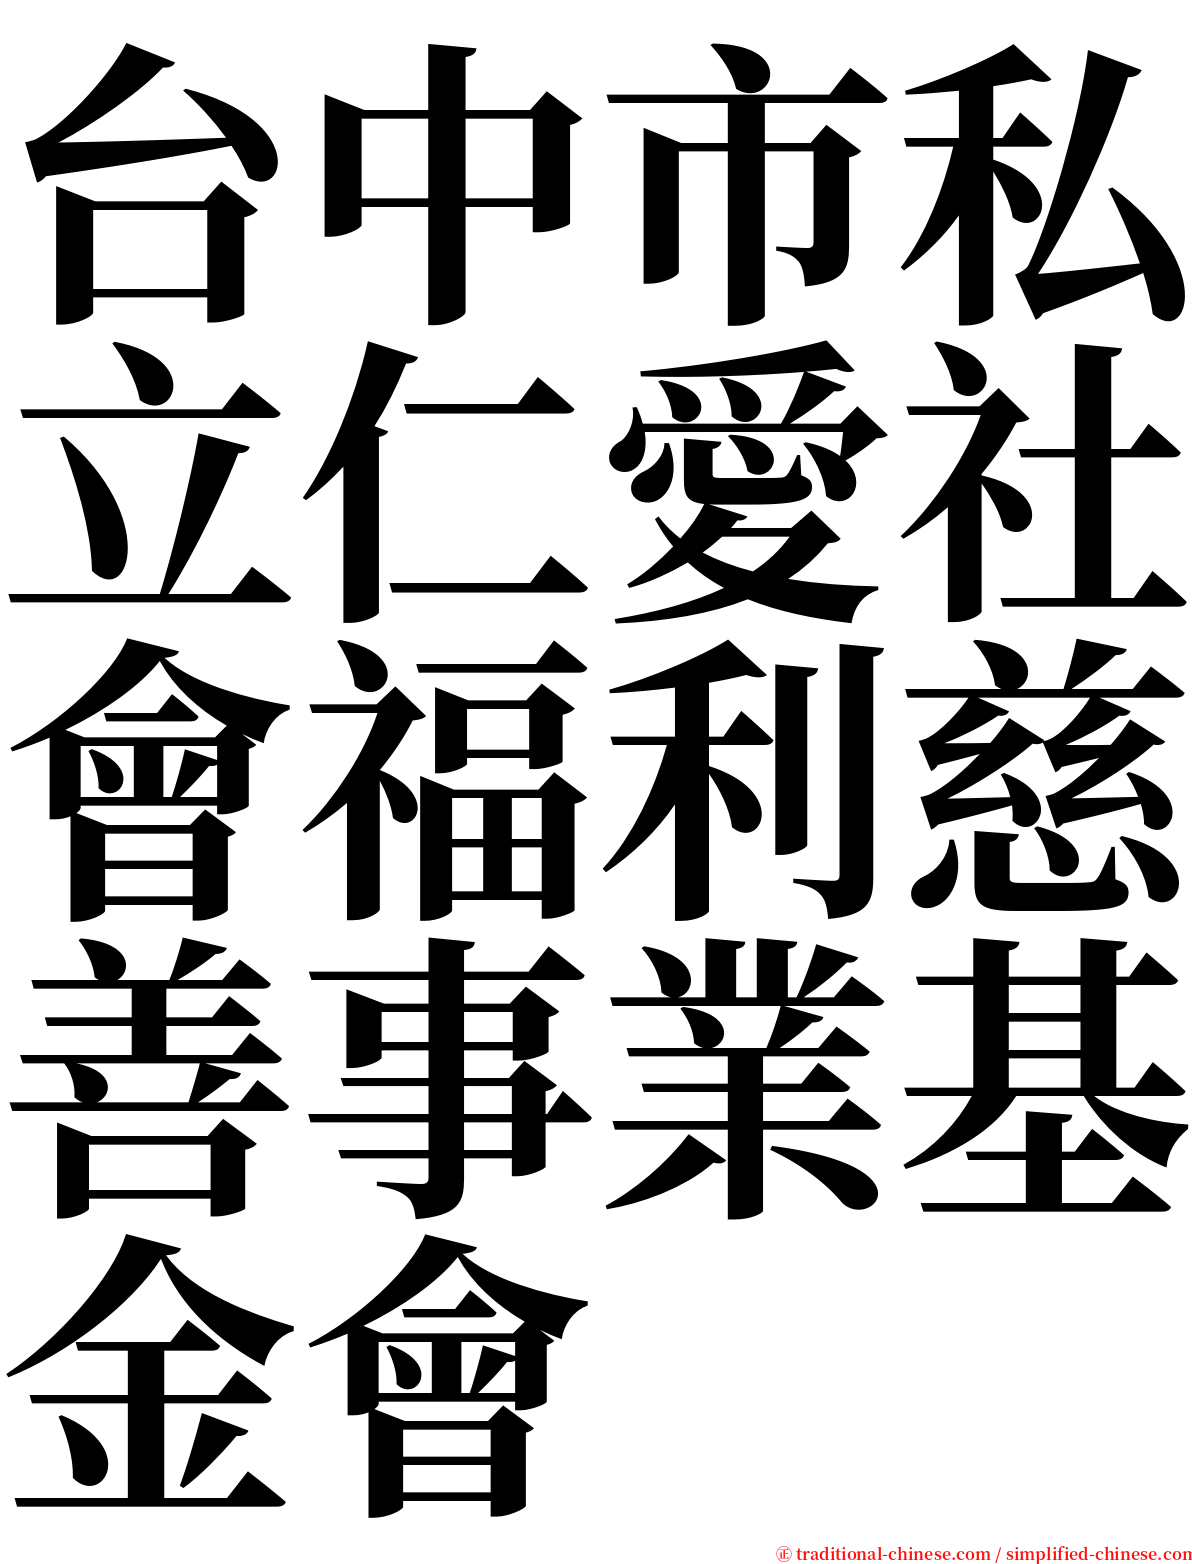 台中市私立仁愛社會福利慈善事業基金會 serif font